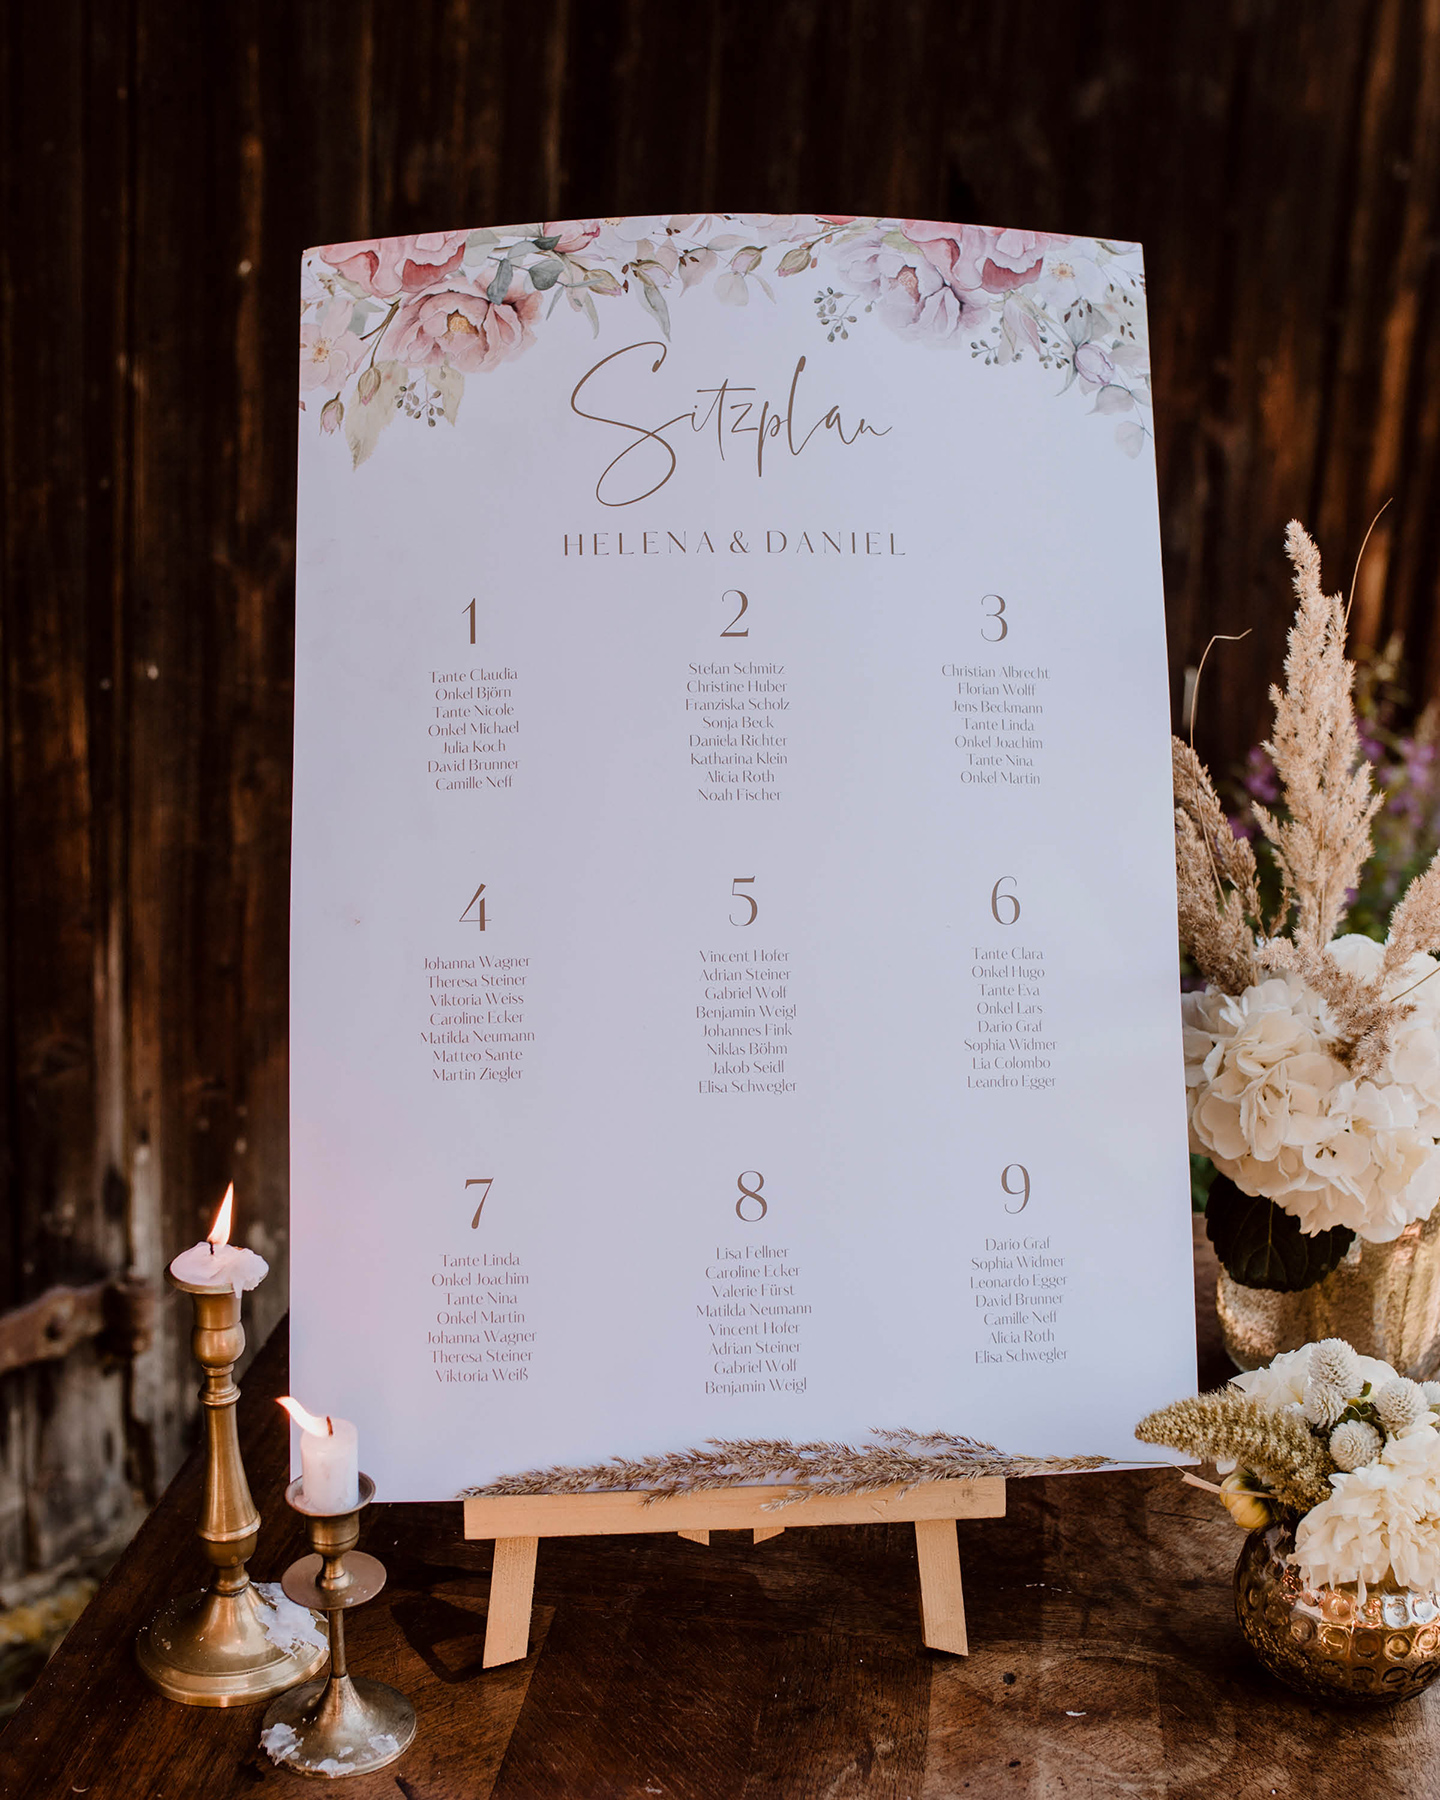 Plakat mit Sitzplan für die Hochzeit aufgestellt auf einer kleinen Staffelei